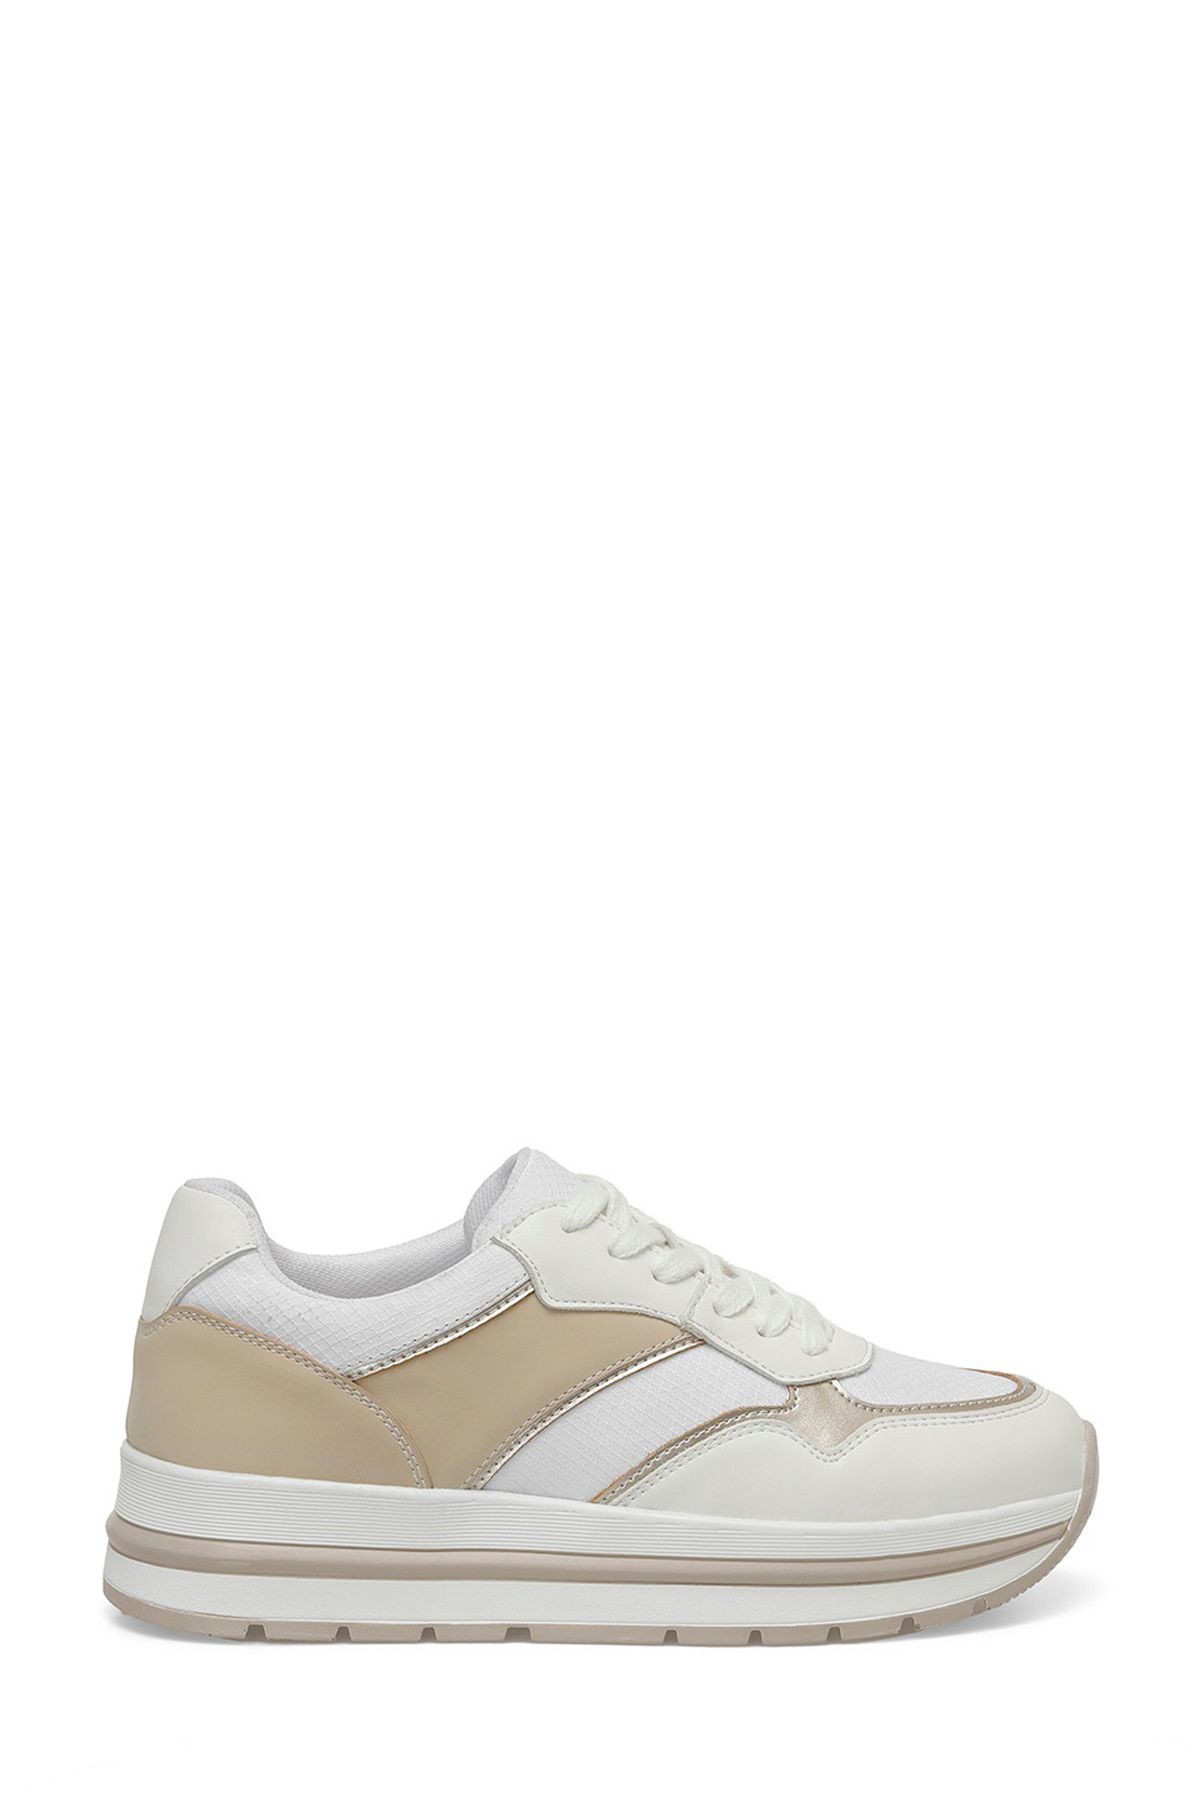 Polaris 323559.Z 4FX Beyaz Kadın Sneaker